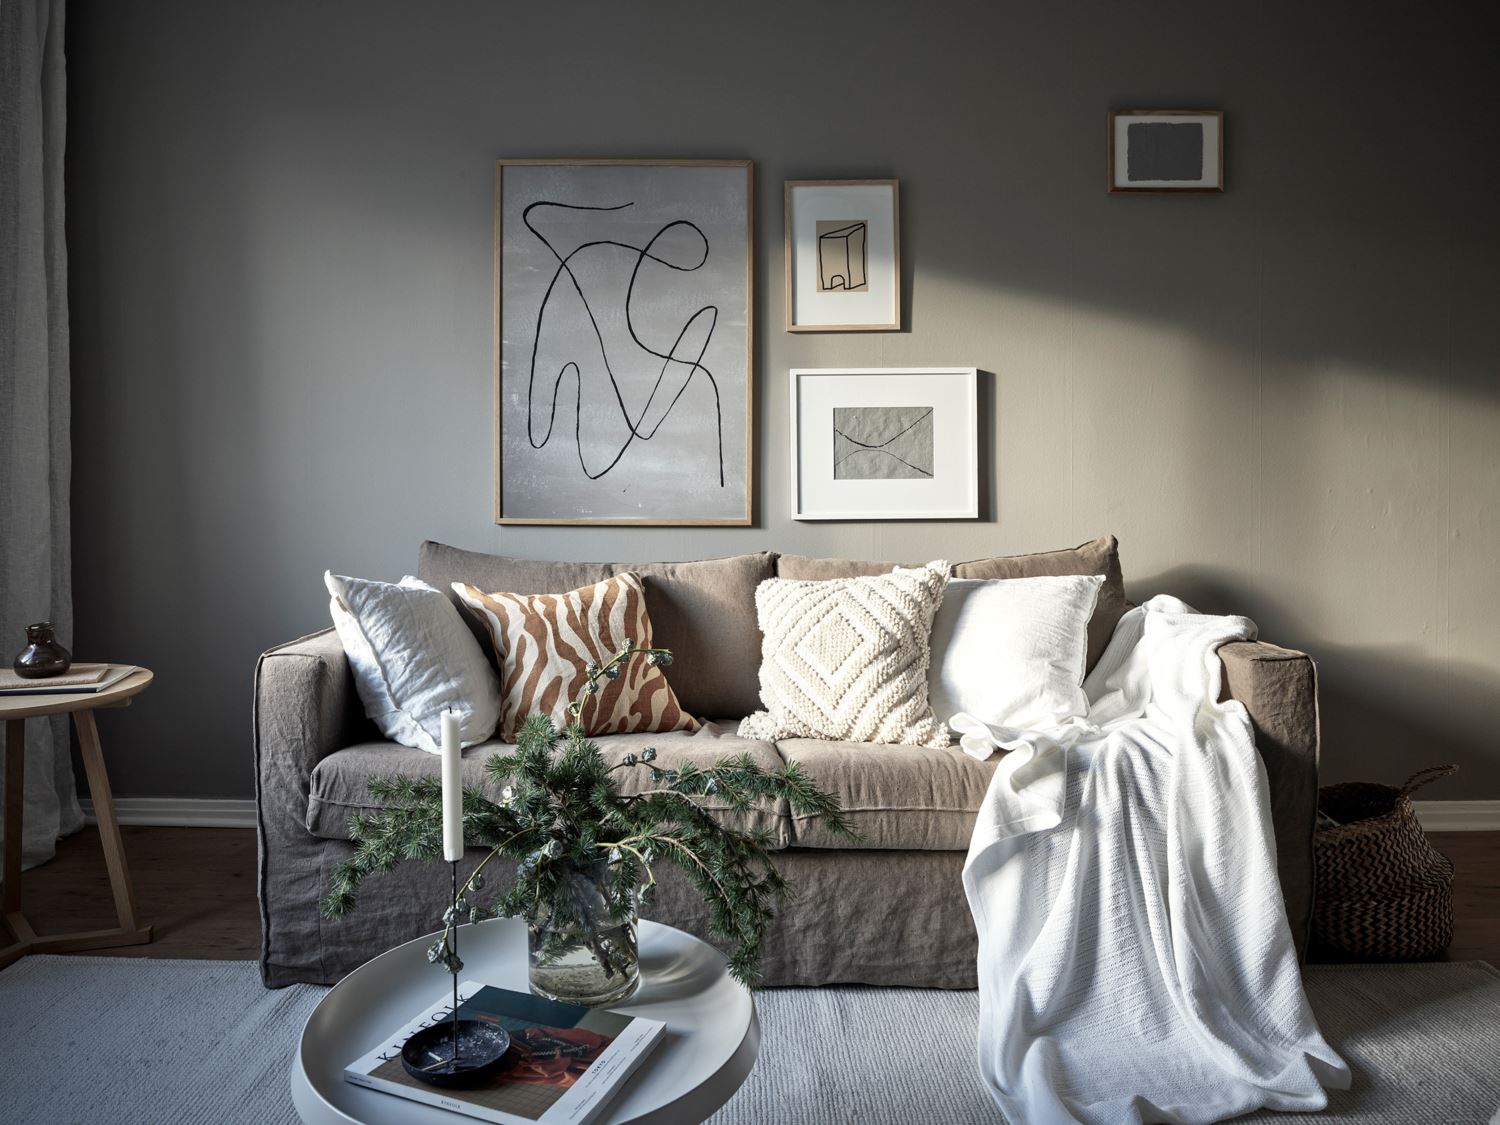 Quels coussins choisir pour décorer un canapé blanc ?